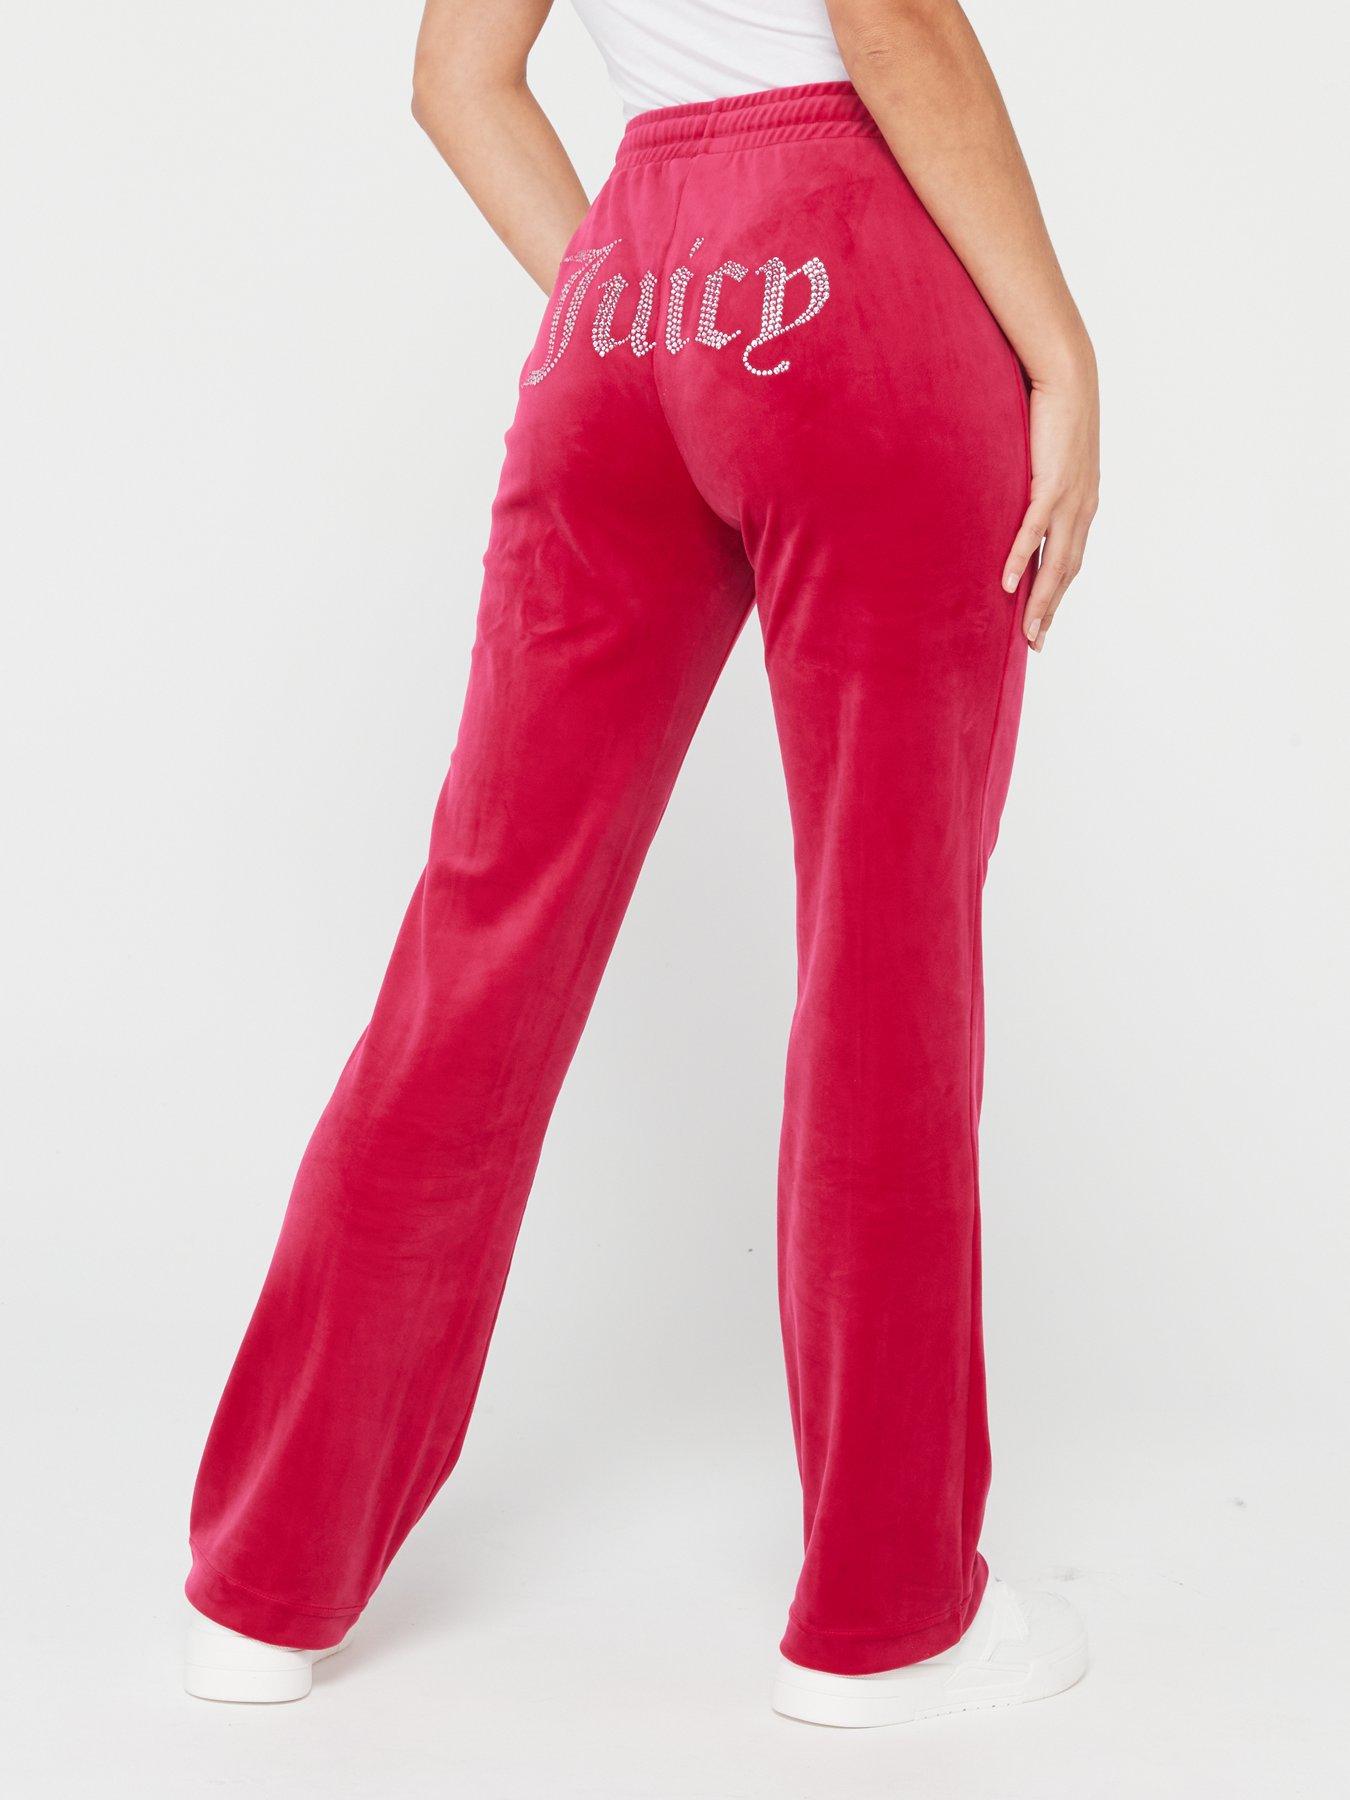 juicy velour pants | Juicy couture, Velour tracksuit, Juicy tracksuit